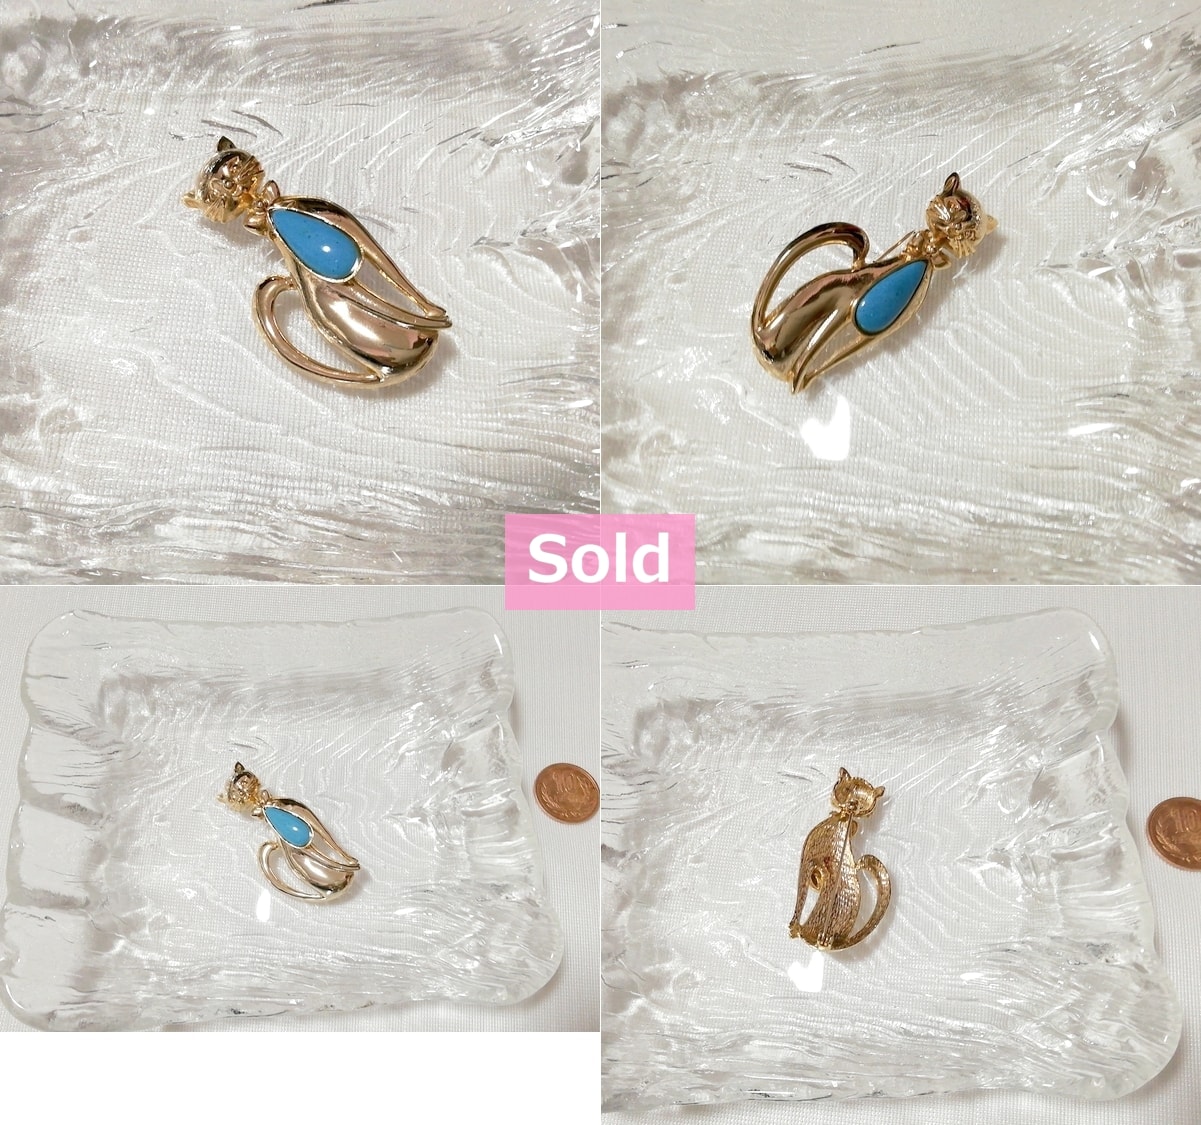 Broche de pin de gato azul aqua dorado accesorios de joyería, accesorios y broches de mujer y otros